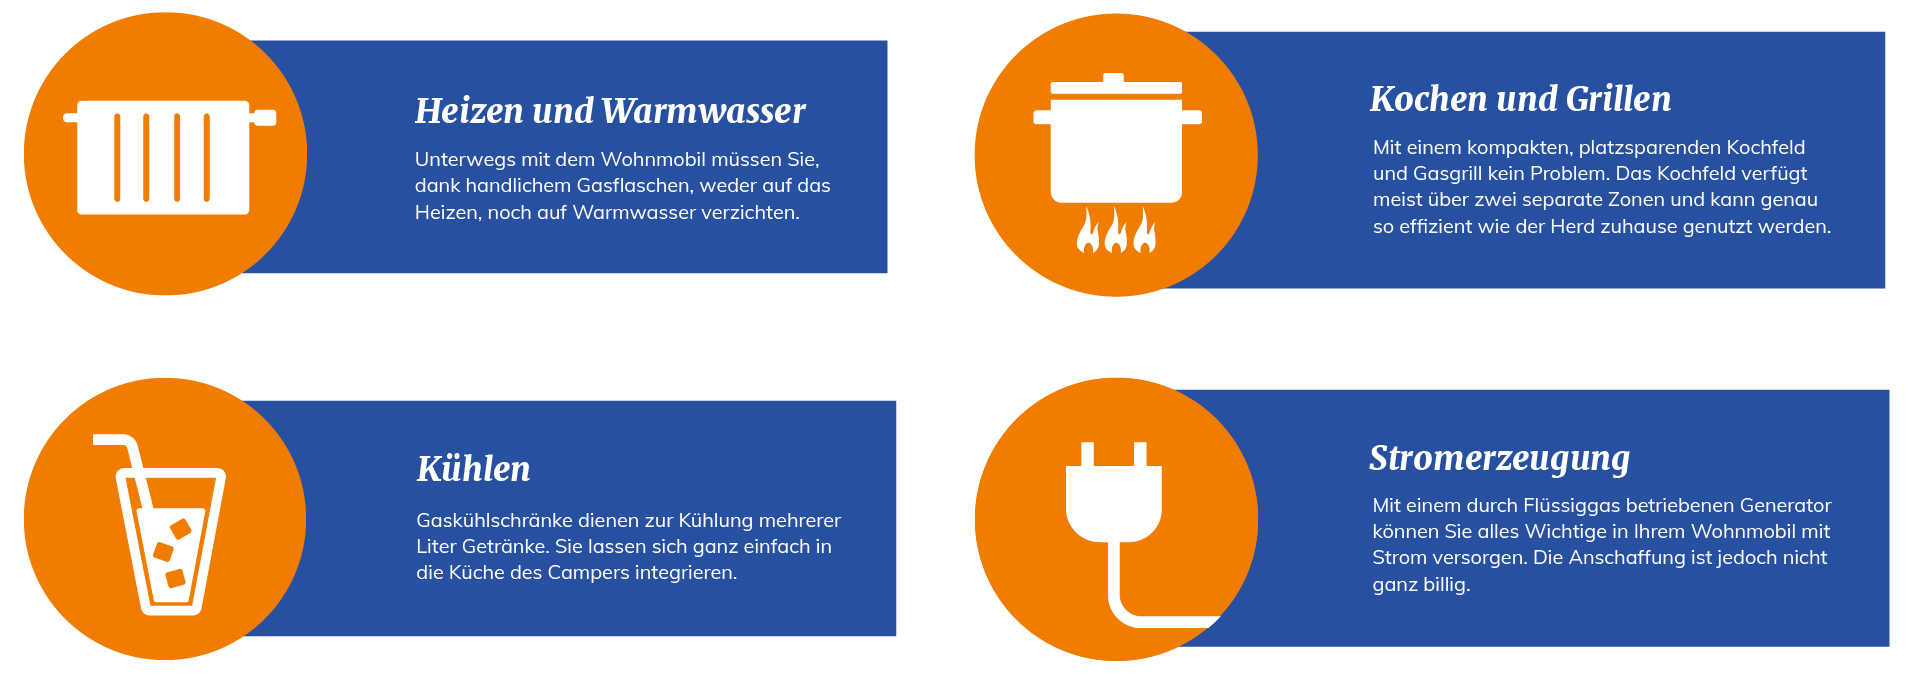 Infografik mit orangenen Icons und in blauen Kästchen geschriebenen Informationen zu den vielen Einsatzmöglichkeiten von Flüssiggas beim Camping und im Wohnmobil. Beispiele sind Heizen, Warmwasser, Kühlen, Kochen und Stromerzeugung.